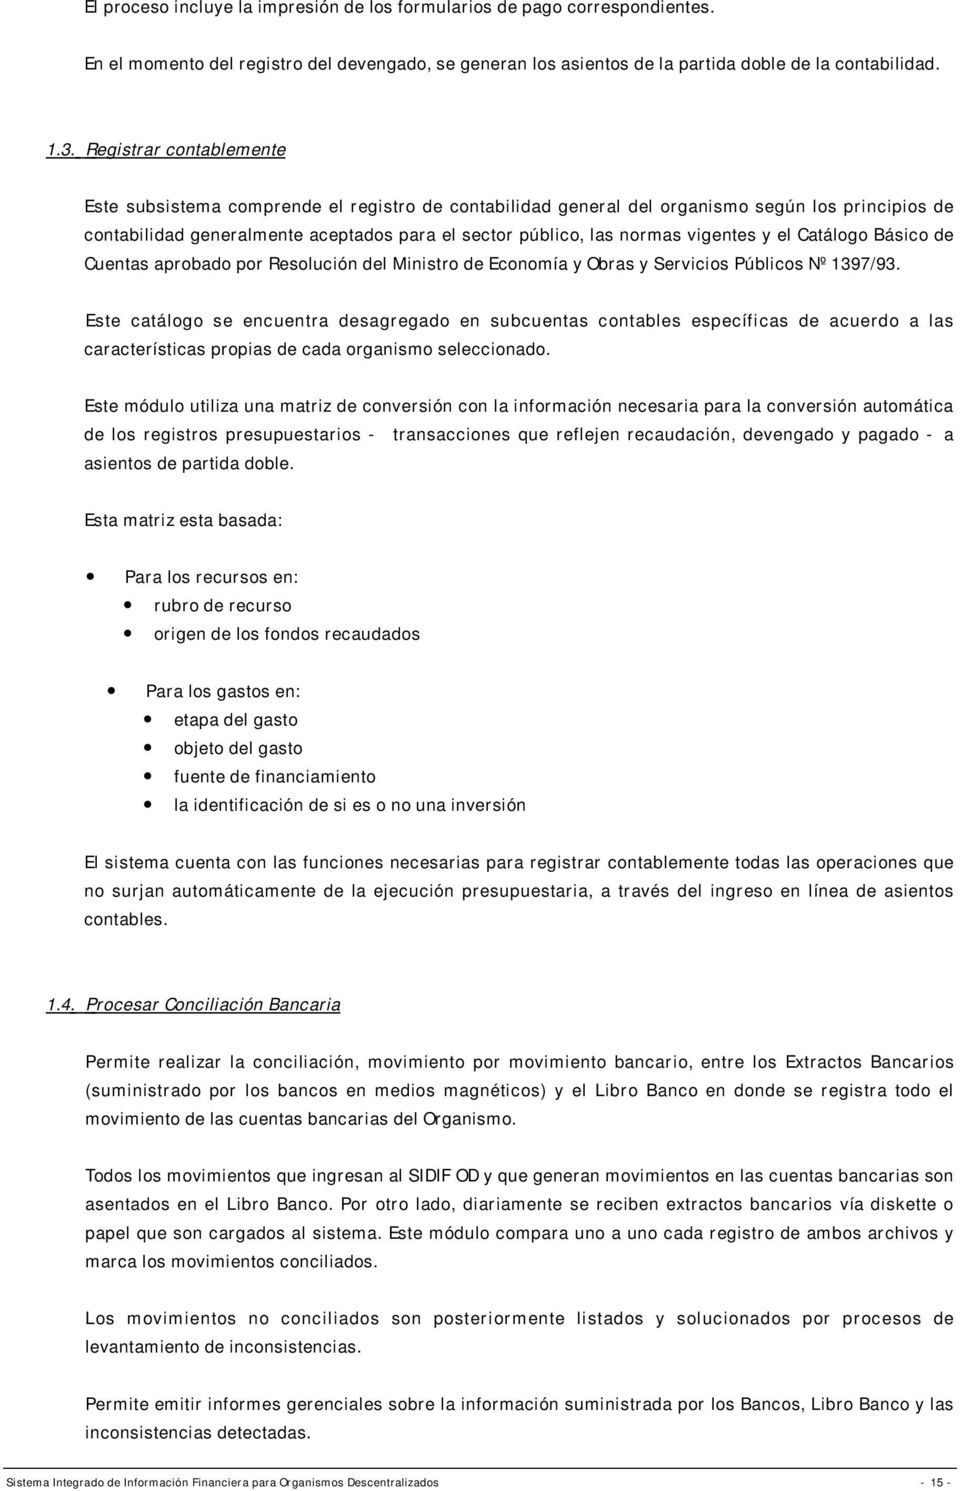 vigentes y el Catálogo Básico de Cuentas aprobado por Resolución del Ministro de Economía y Obras y Servicios Públicos Nº 1397/93.